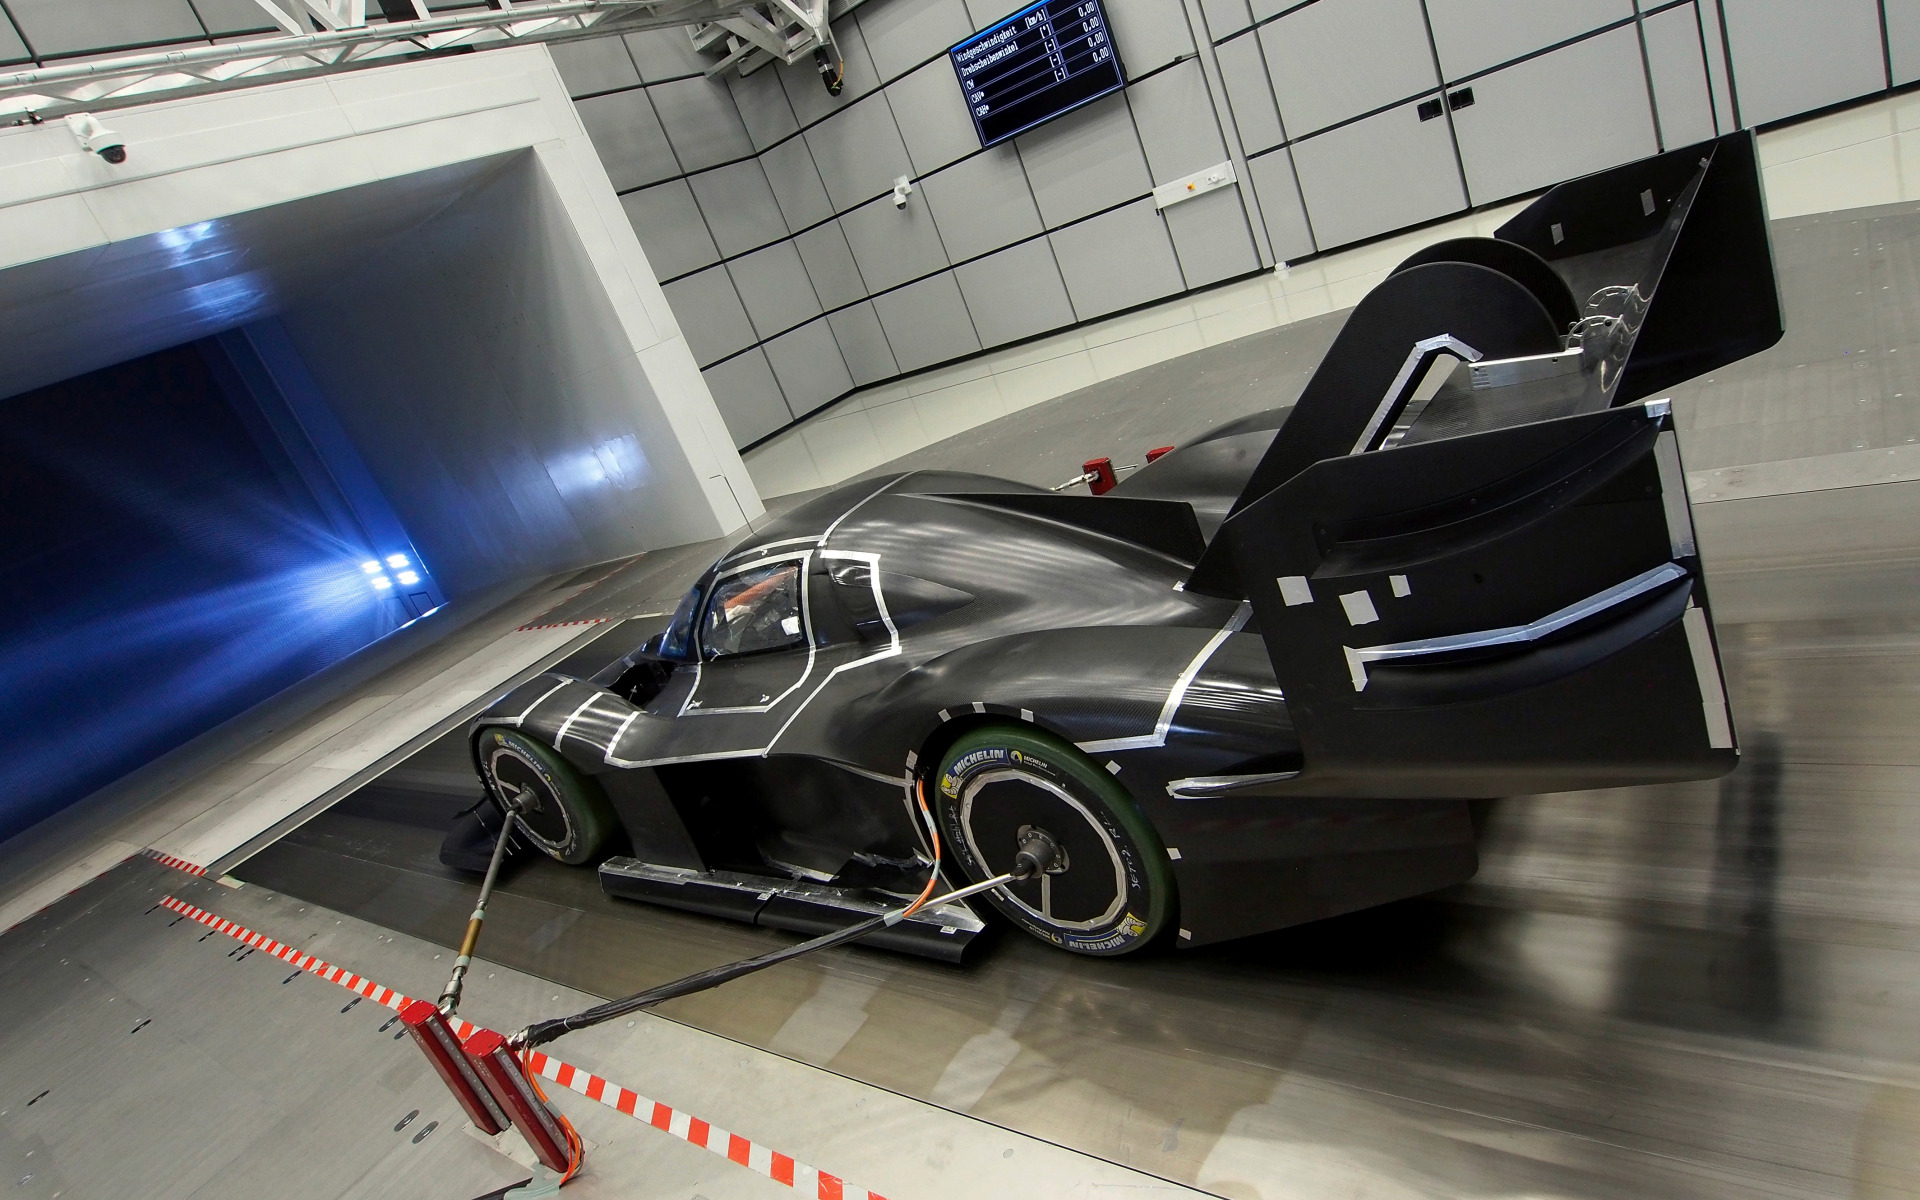 Прототип испытания. Volkswagen Motorsport i.d r Pikes Peak. Аэродинамическая труба для автомобилей. Аэродинамическая машина. Аэродинамические испытания автомобилей.